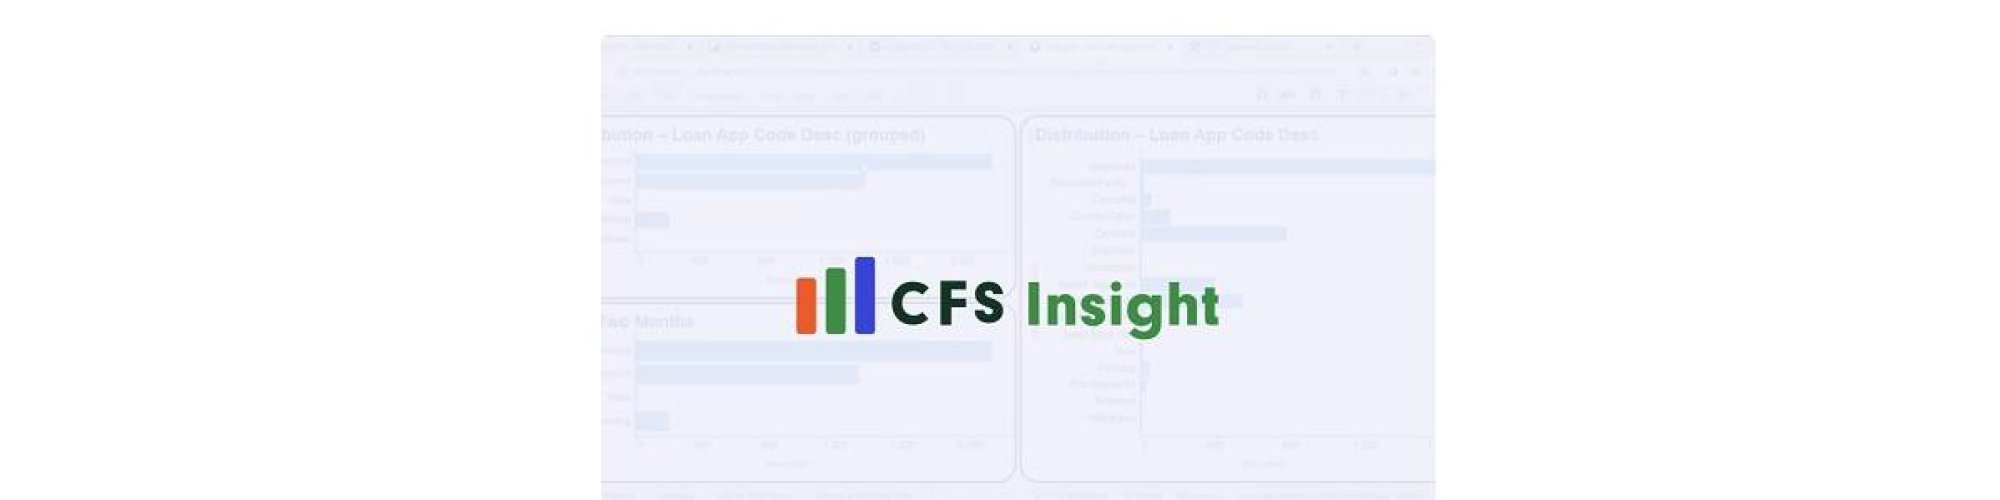 CFS Insight